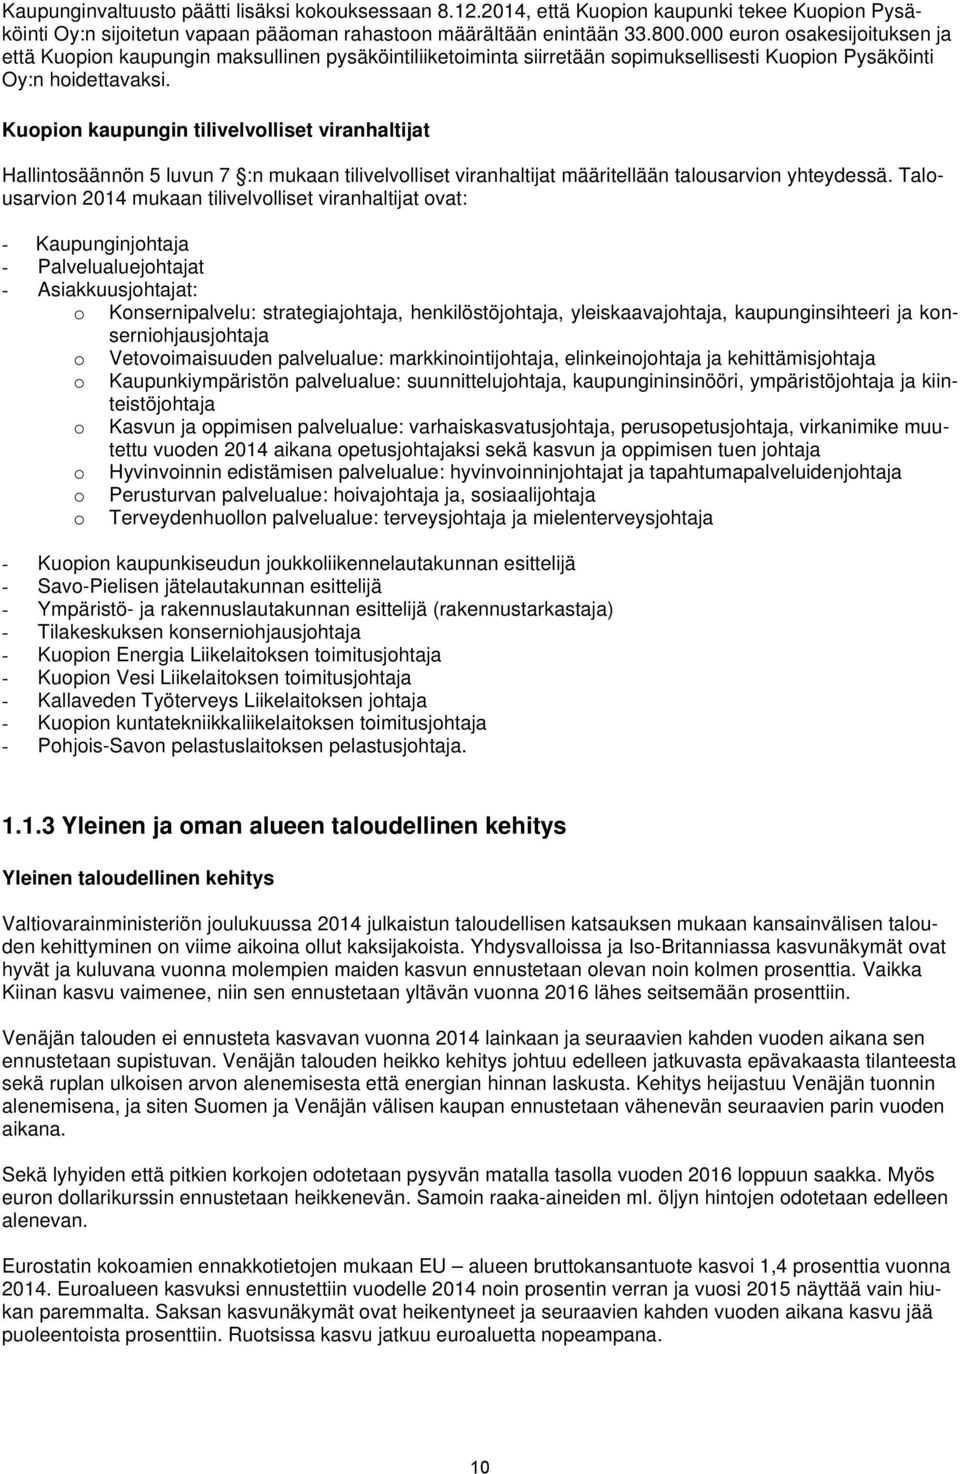 Kuopion kaupungin tilivelvolliset viranhaltijat Hallintosäännön 5 luvun 7 :n mukaan tilivelvolliset viranhaltijat määritellään talousarvion yhteydessä.